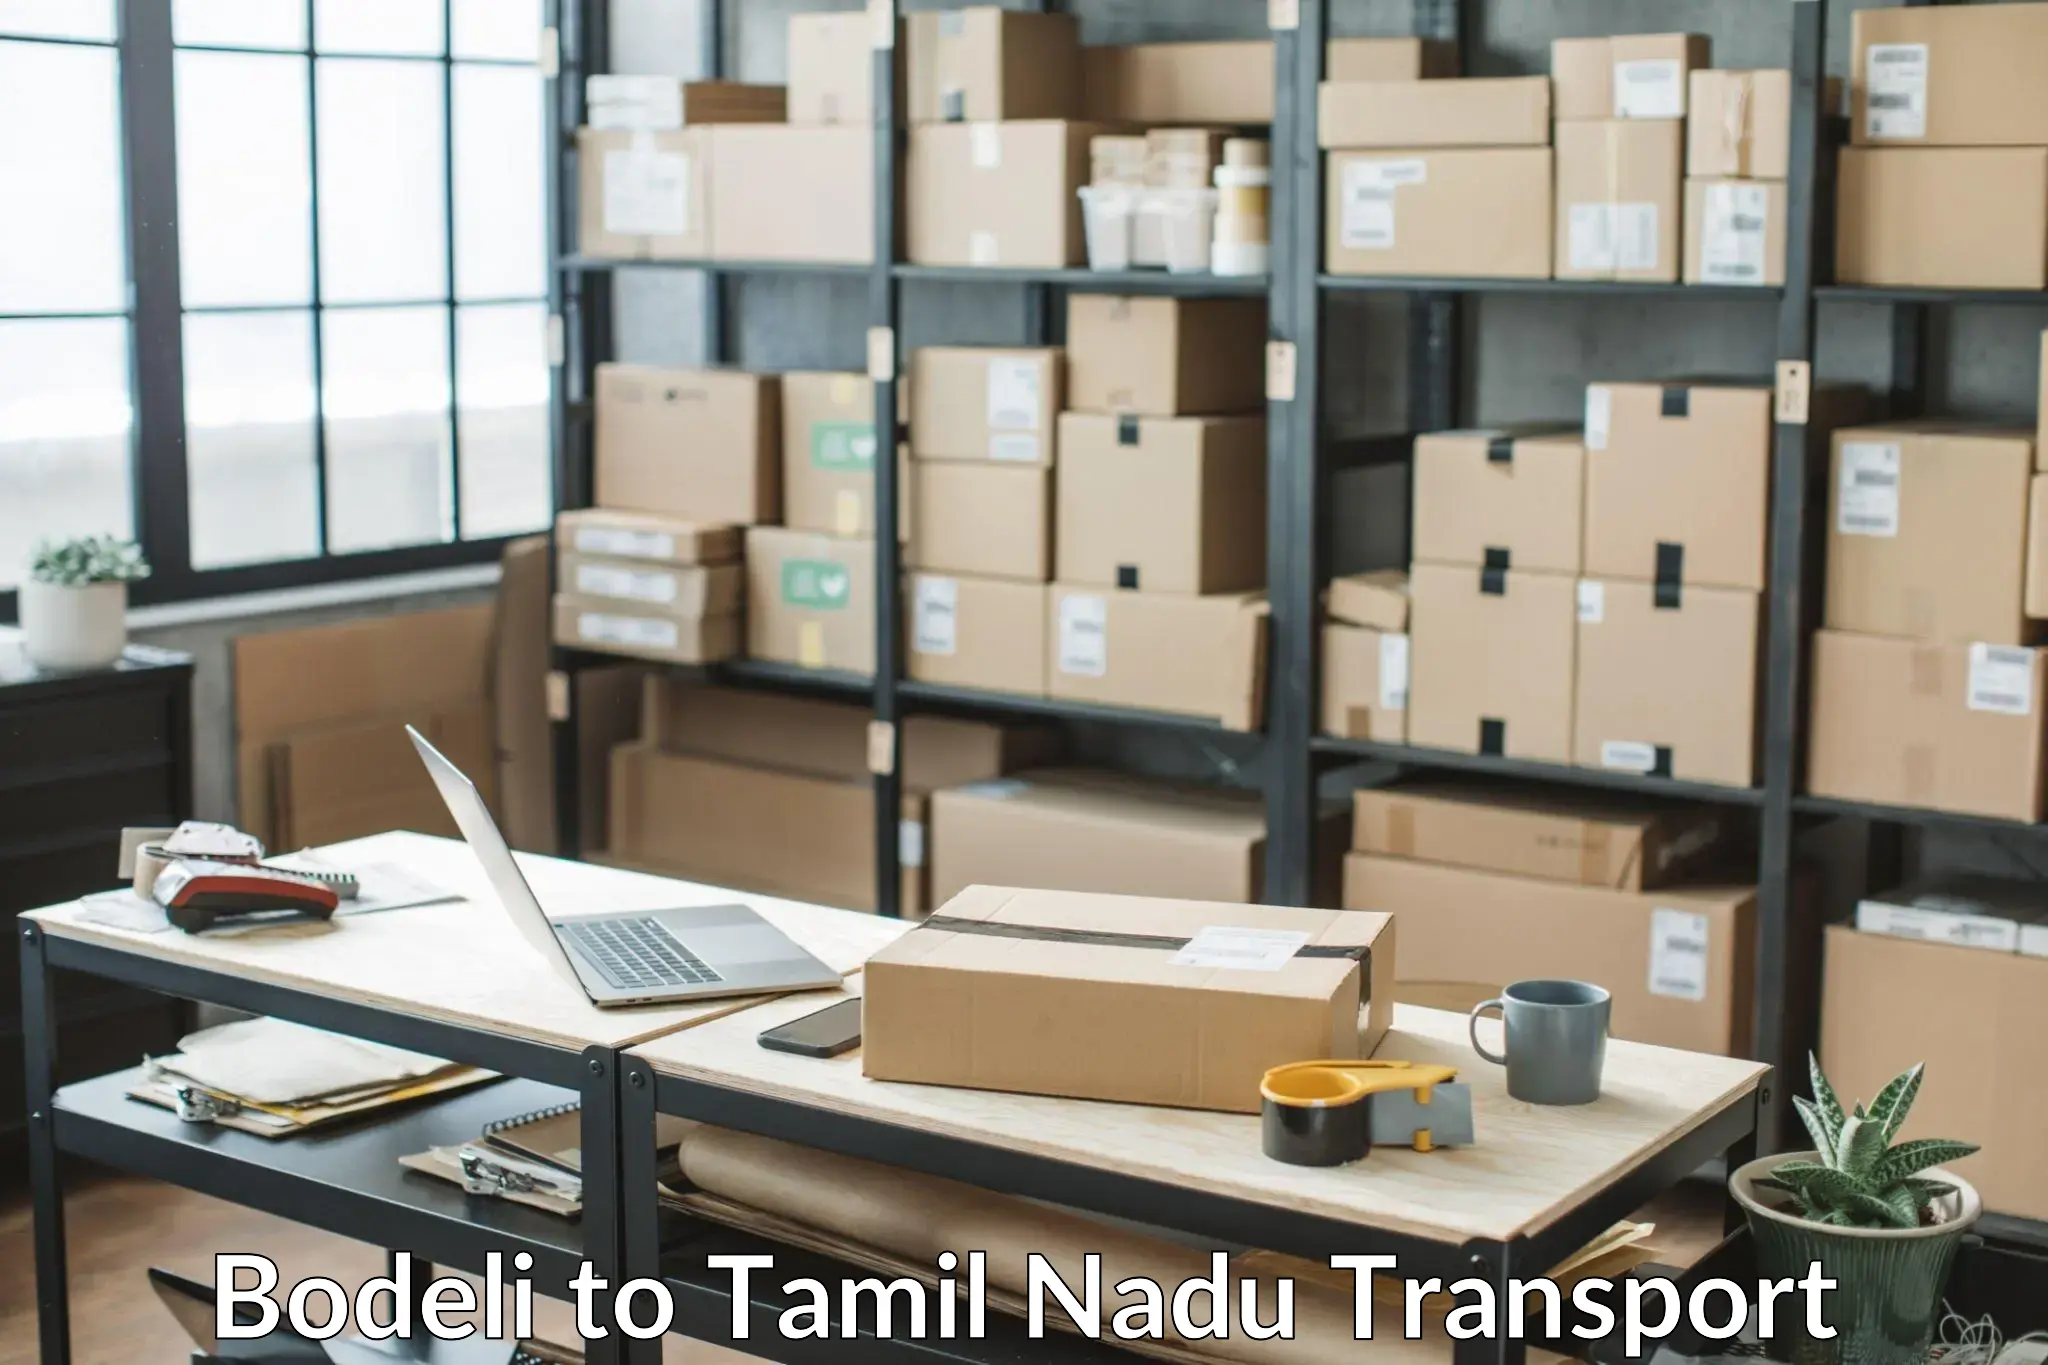 Road transport online services Bodeli to Tamil Nadu